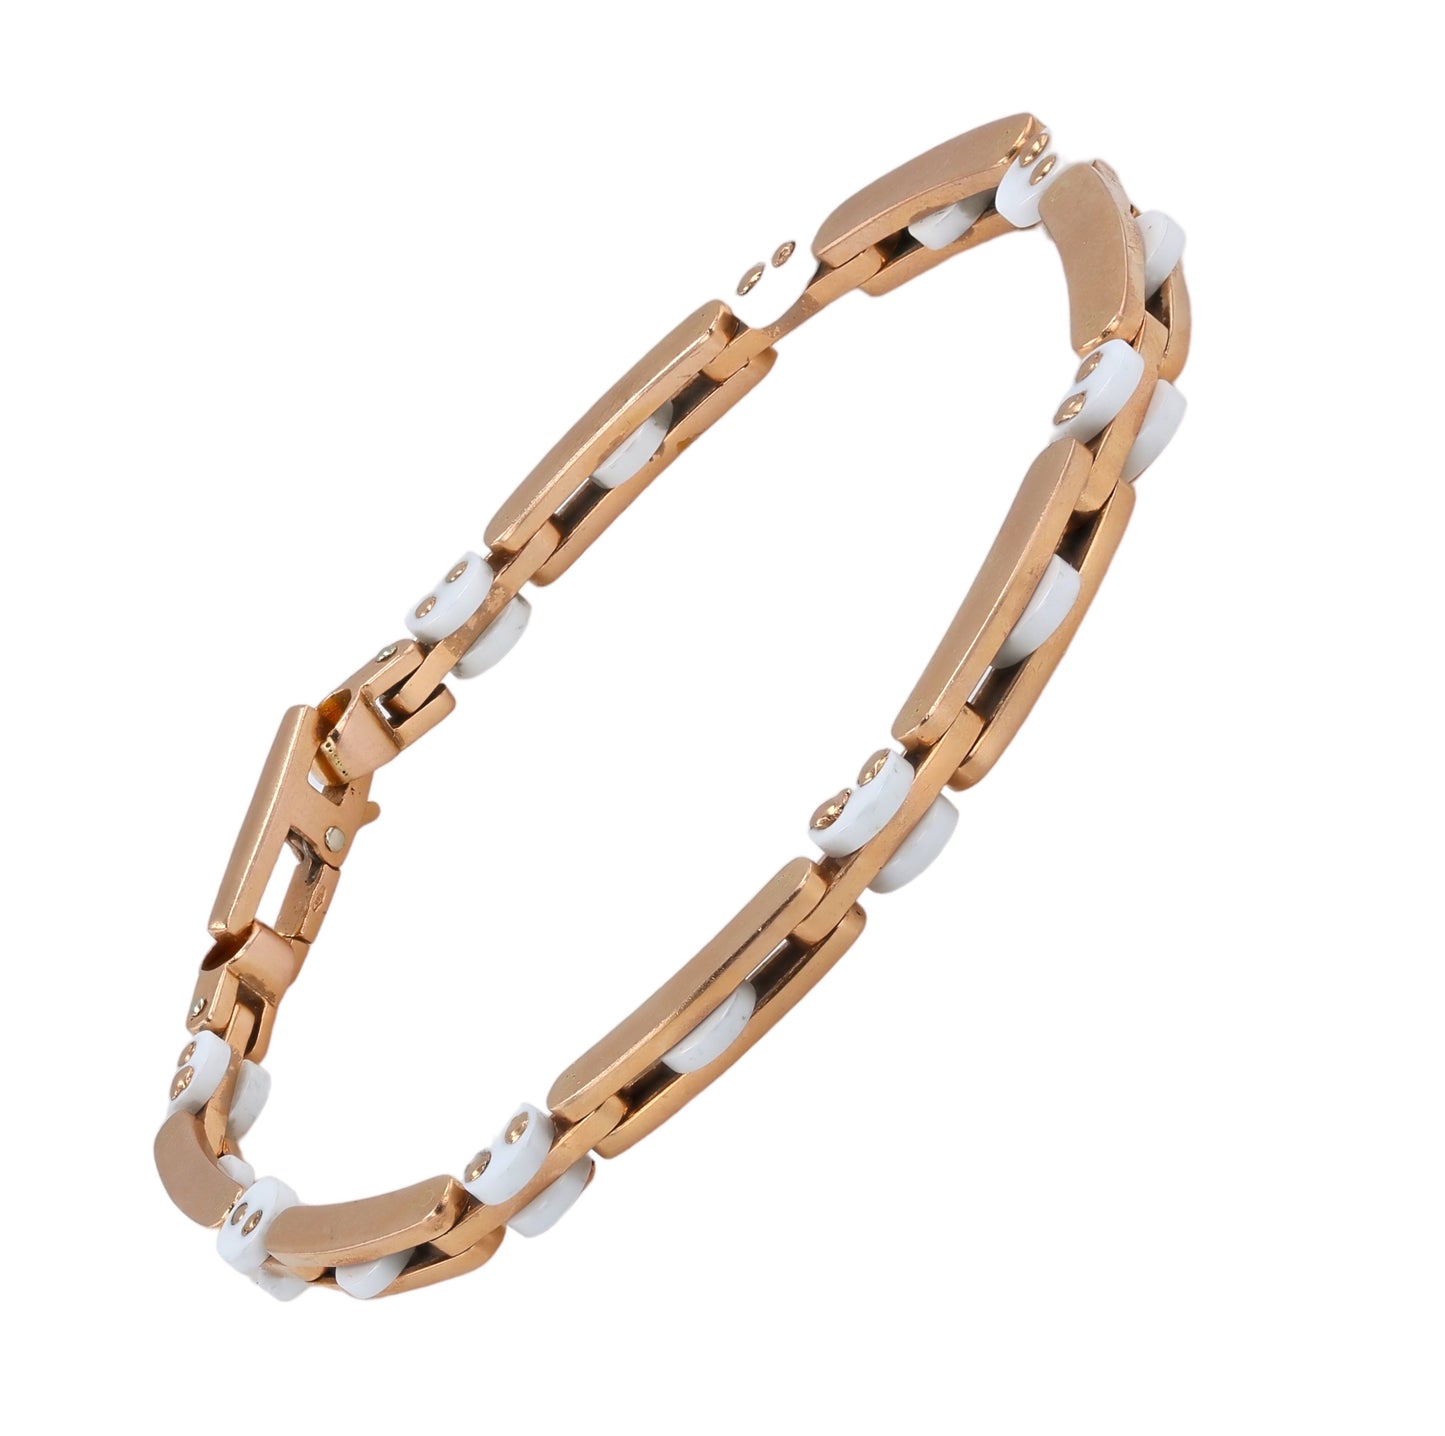 Especial Edition rose gold 14k solid agate’s bracelet